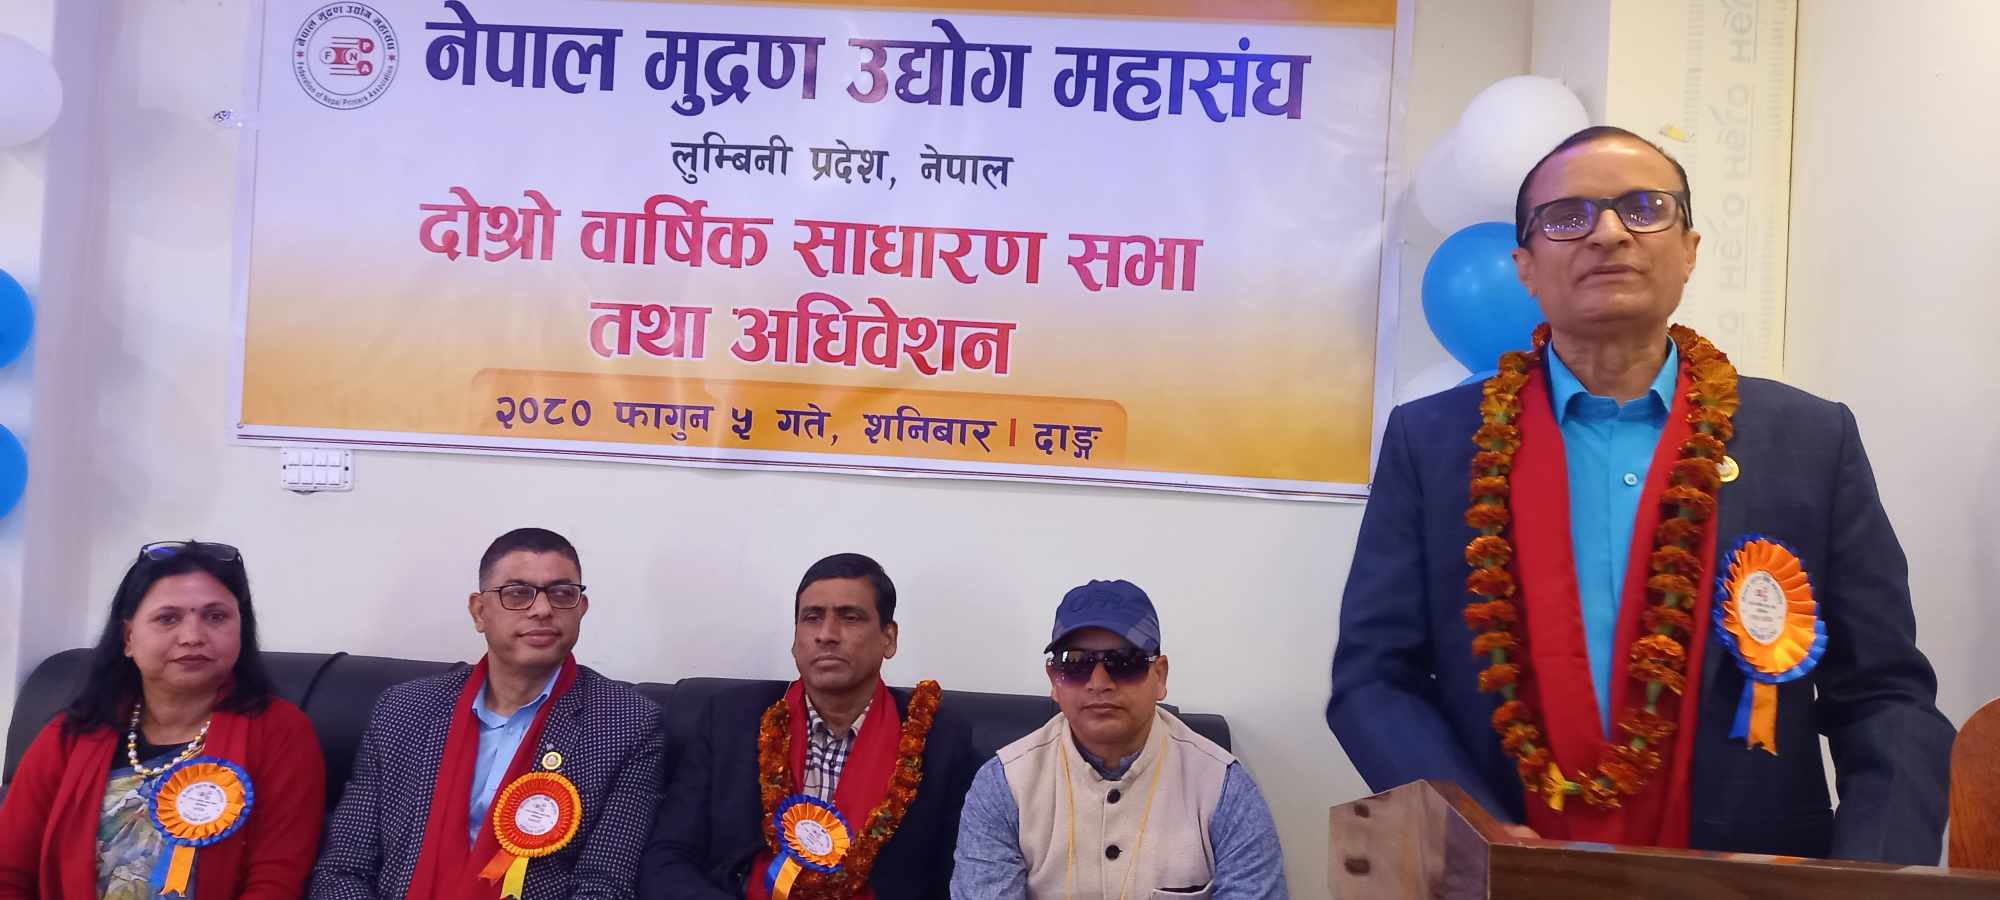 नेपाल मुद्रण उद्योग महासंघ लुम्बिनीको साधारणसभा तथा अधिवेशन दाङमा शुरु